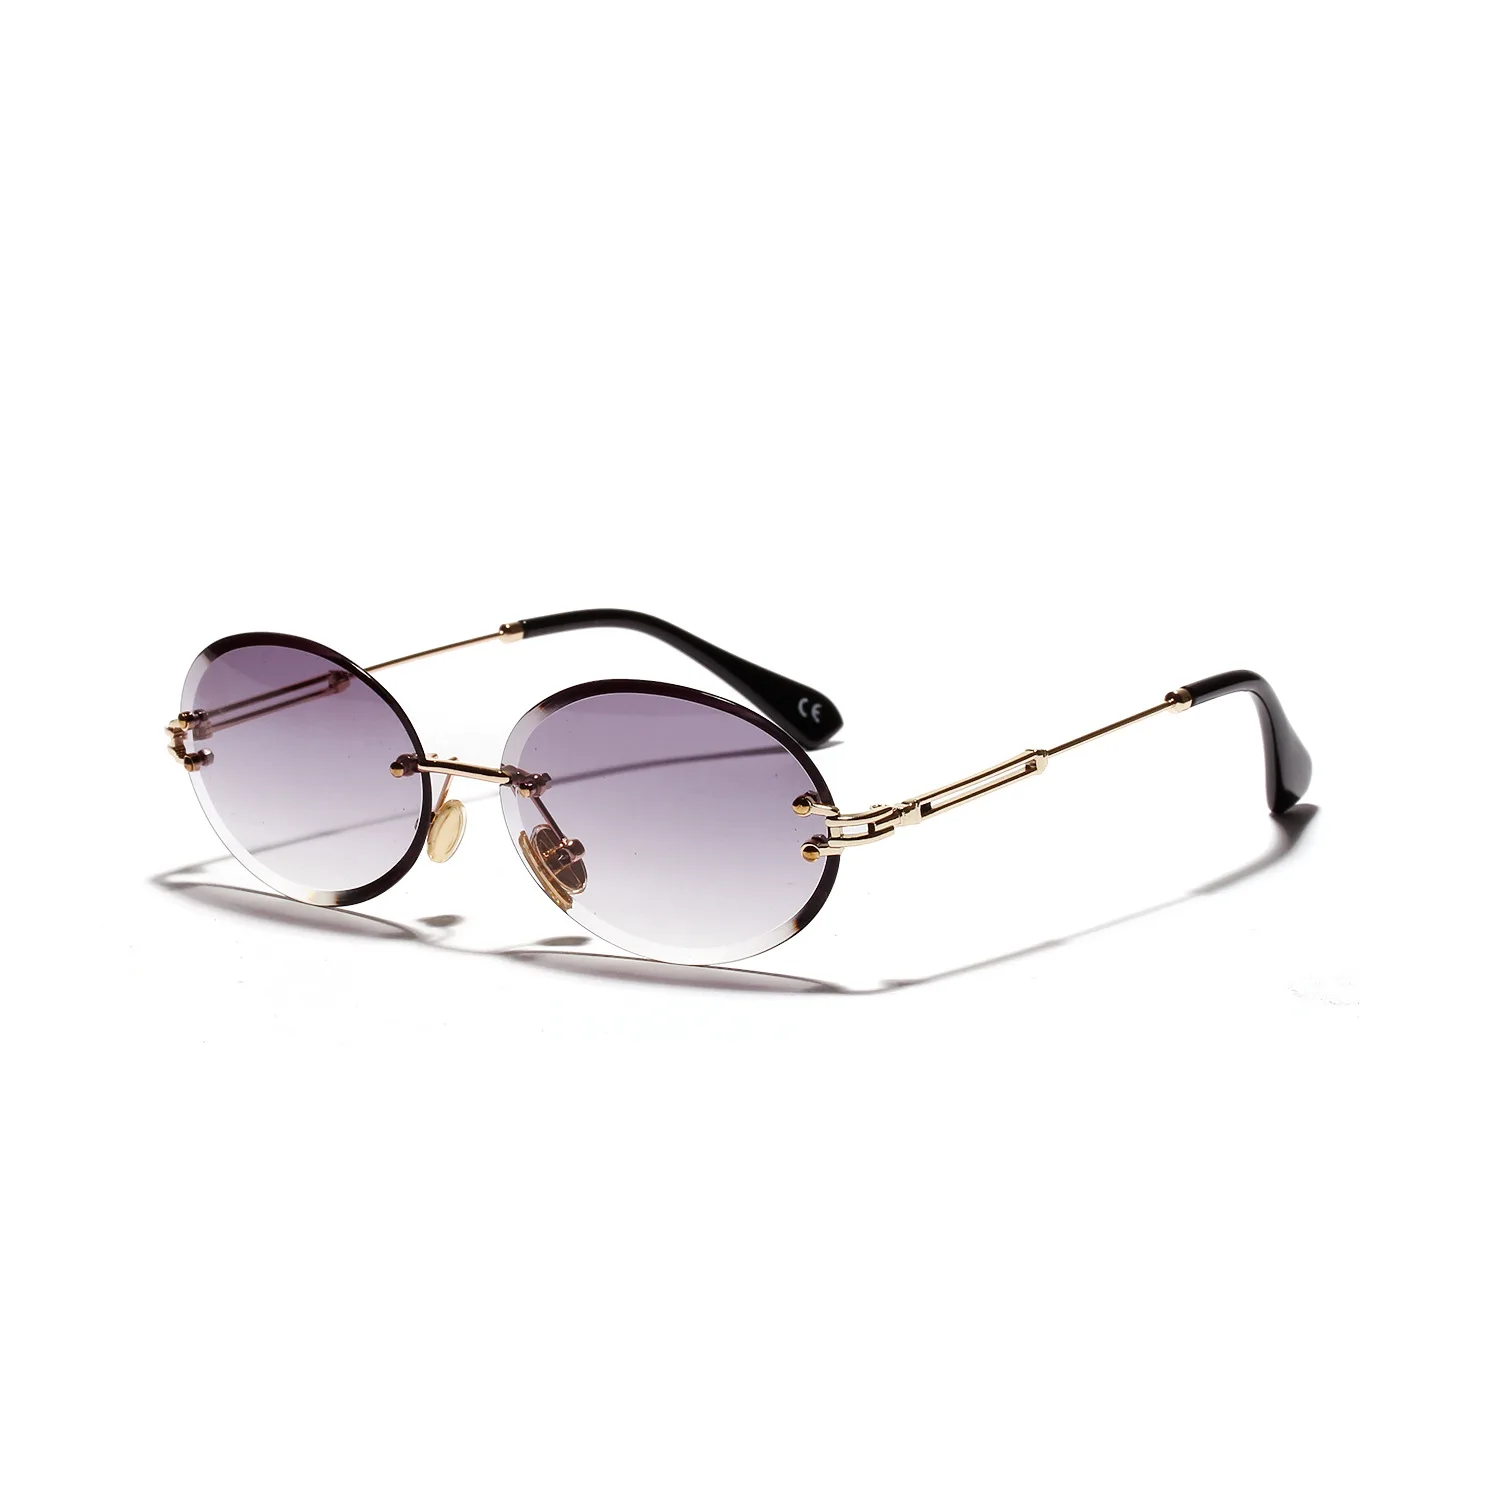 FENCHI ochelari de Soare Femei Cadru Metalic de Brand Designer de ochelari de Soare UV400 Ochelari de lunetă soleil femme Oculos Feminino zonnebril dame 5